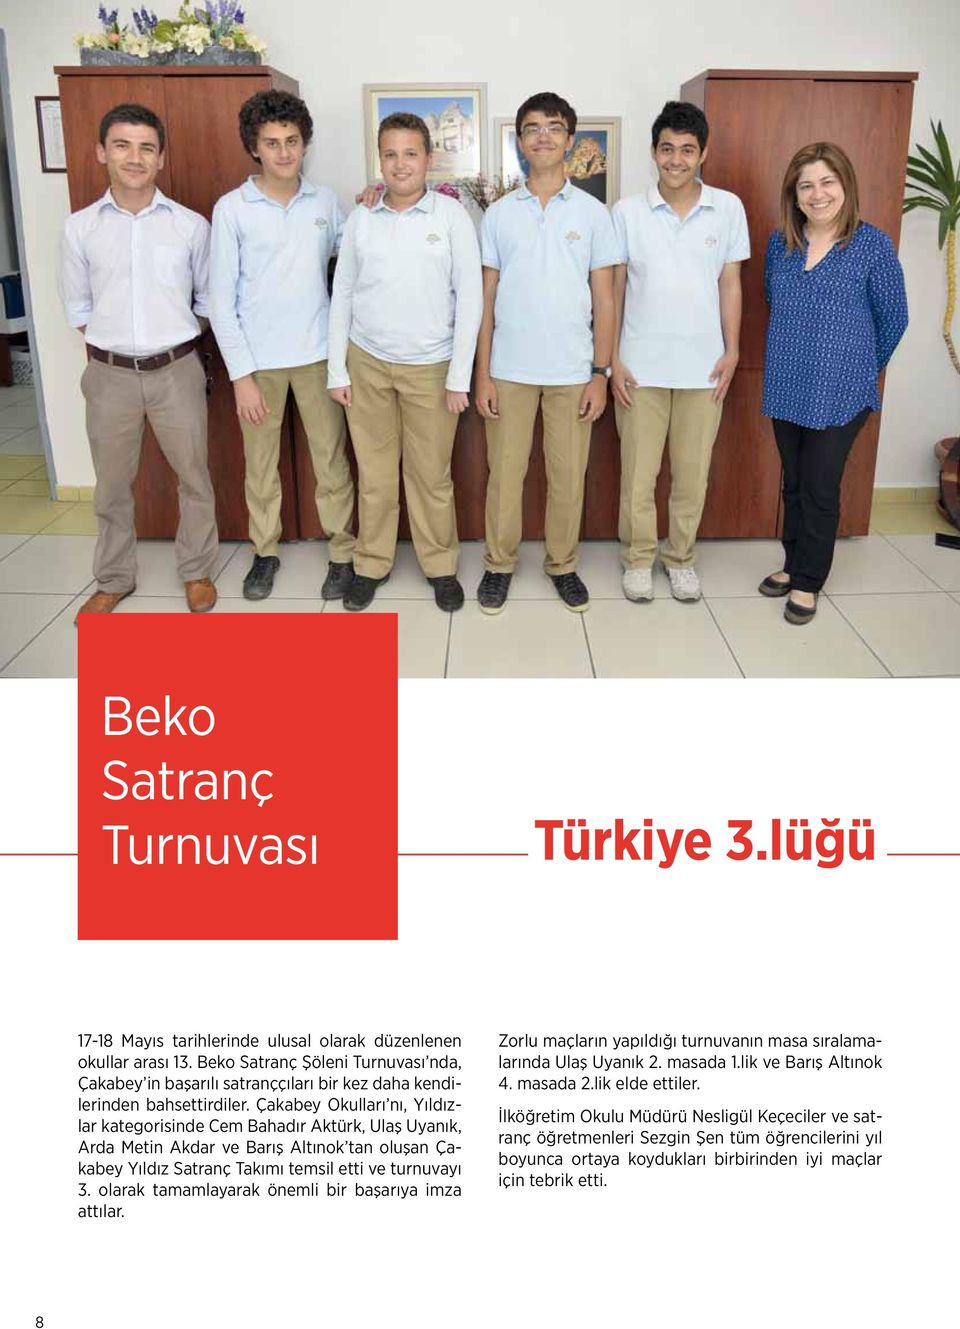 Çakabey Okulları nı, Yıldızlar kategorisinde Cem Bahadır Aktürk, Ulaş Uyanık, Arda Metin Akdar ve Barış Altınok tan oluşan Çakabey Yıldız Satranç Takımı temsil etti ve turnuvayı 3.